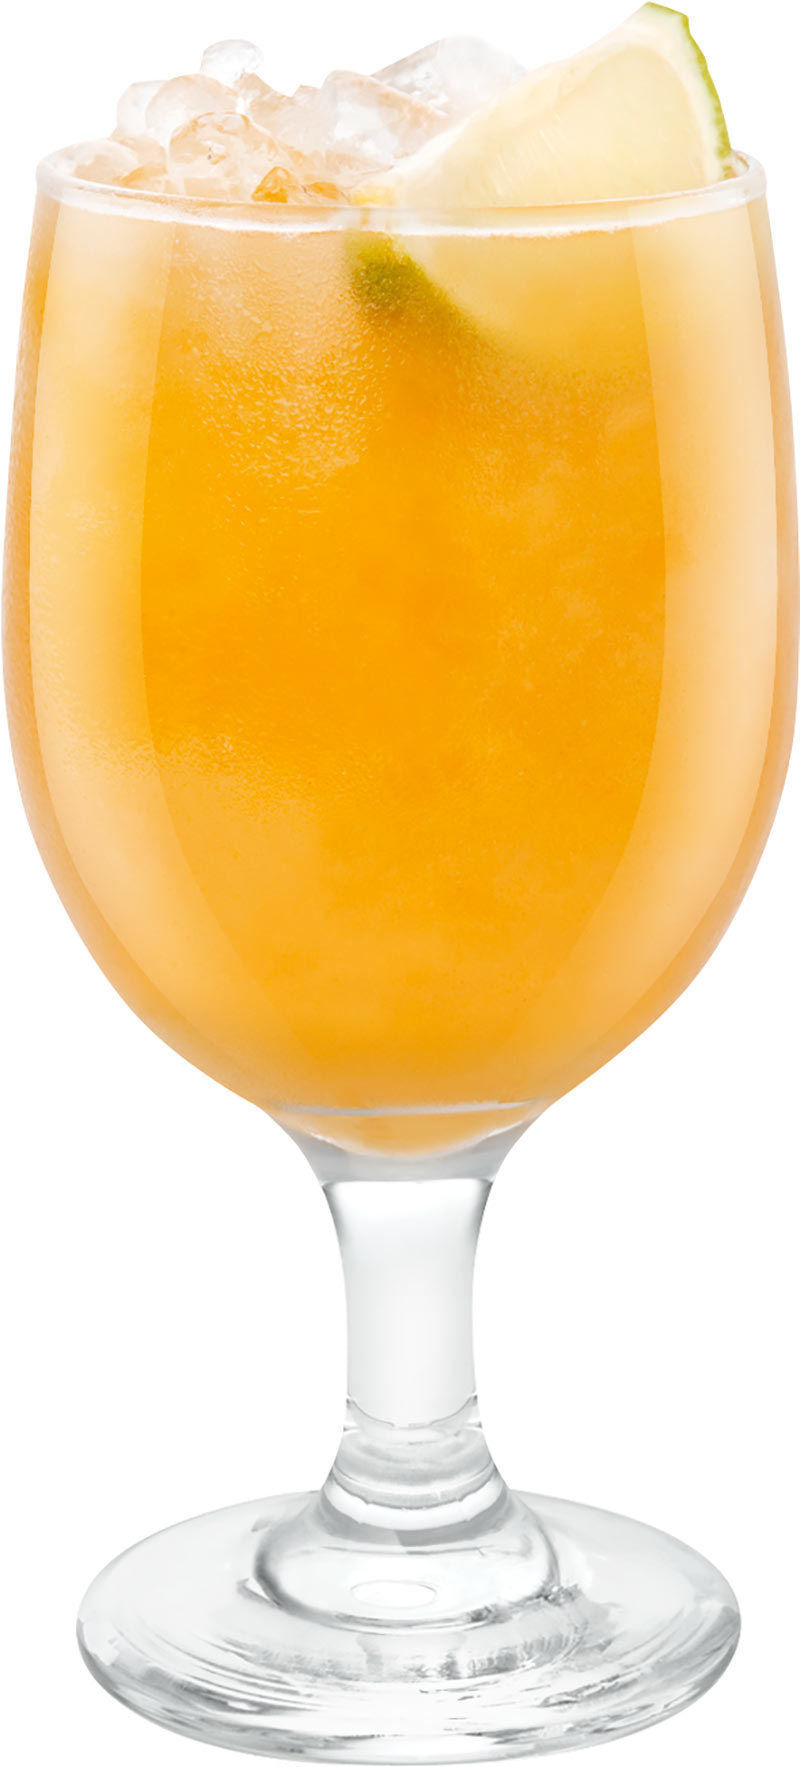 Comment préparer le cocktail Margarita mandarine